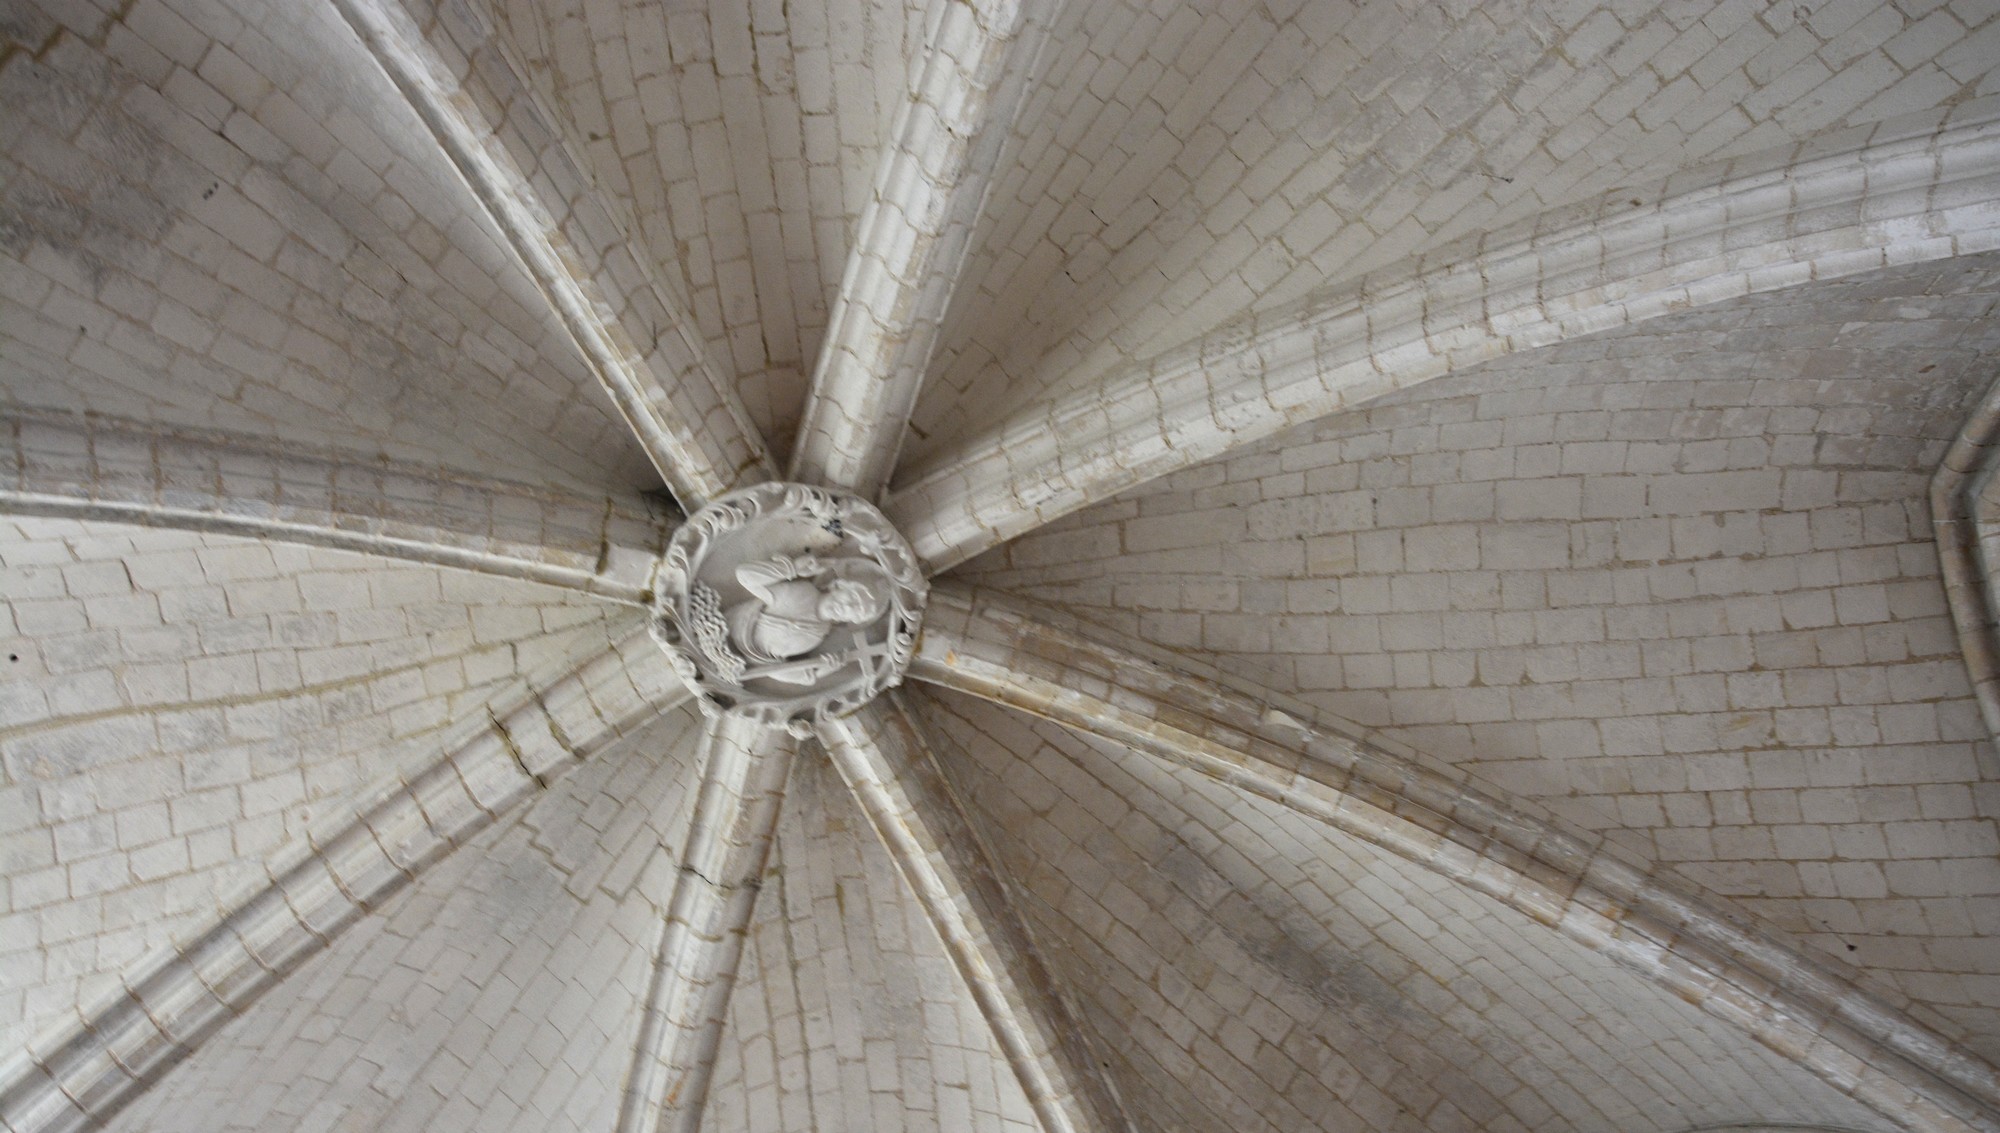 Cathédrale de Saint-Omer| Tour Octogonale RDC clé de voûte sur croisée d'ogives